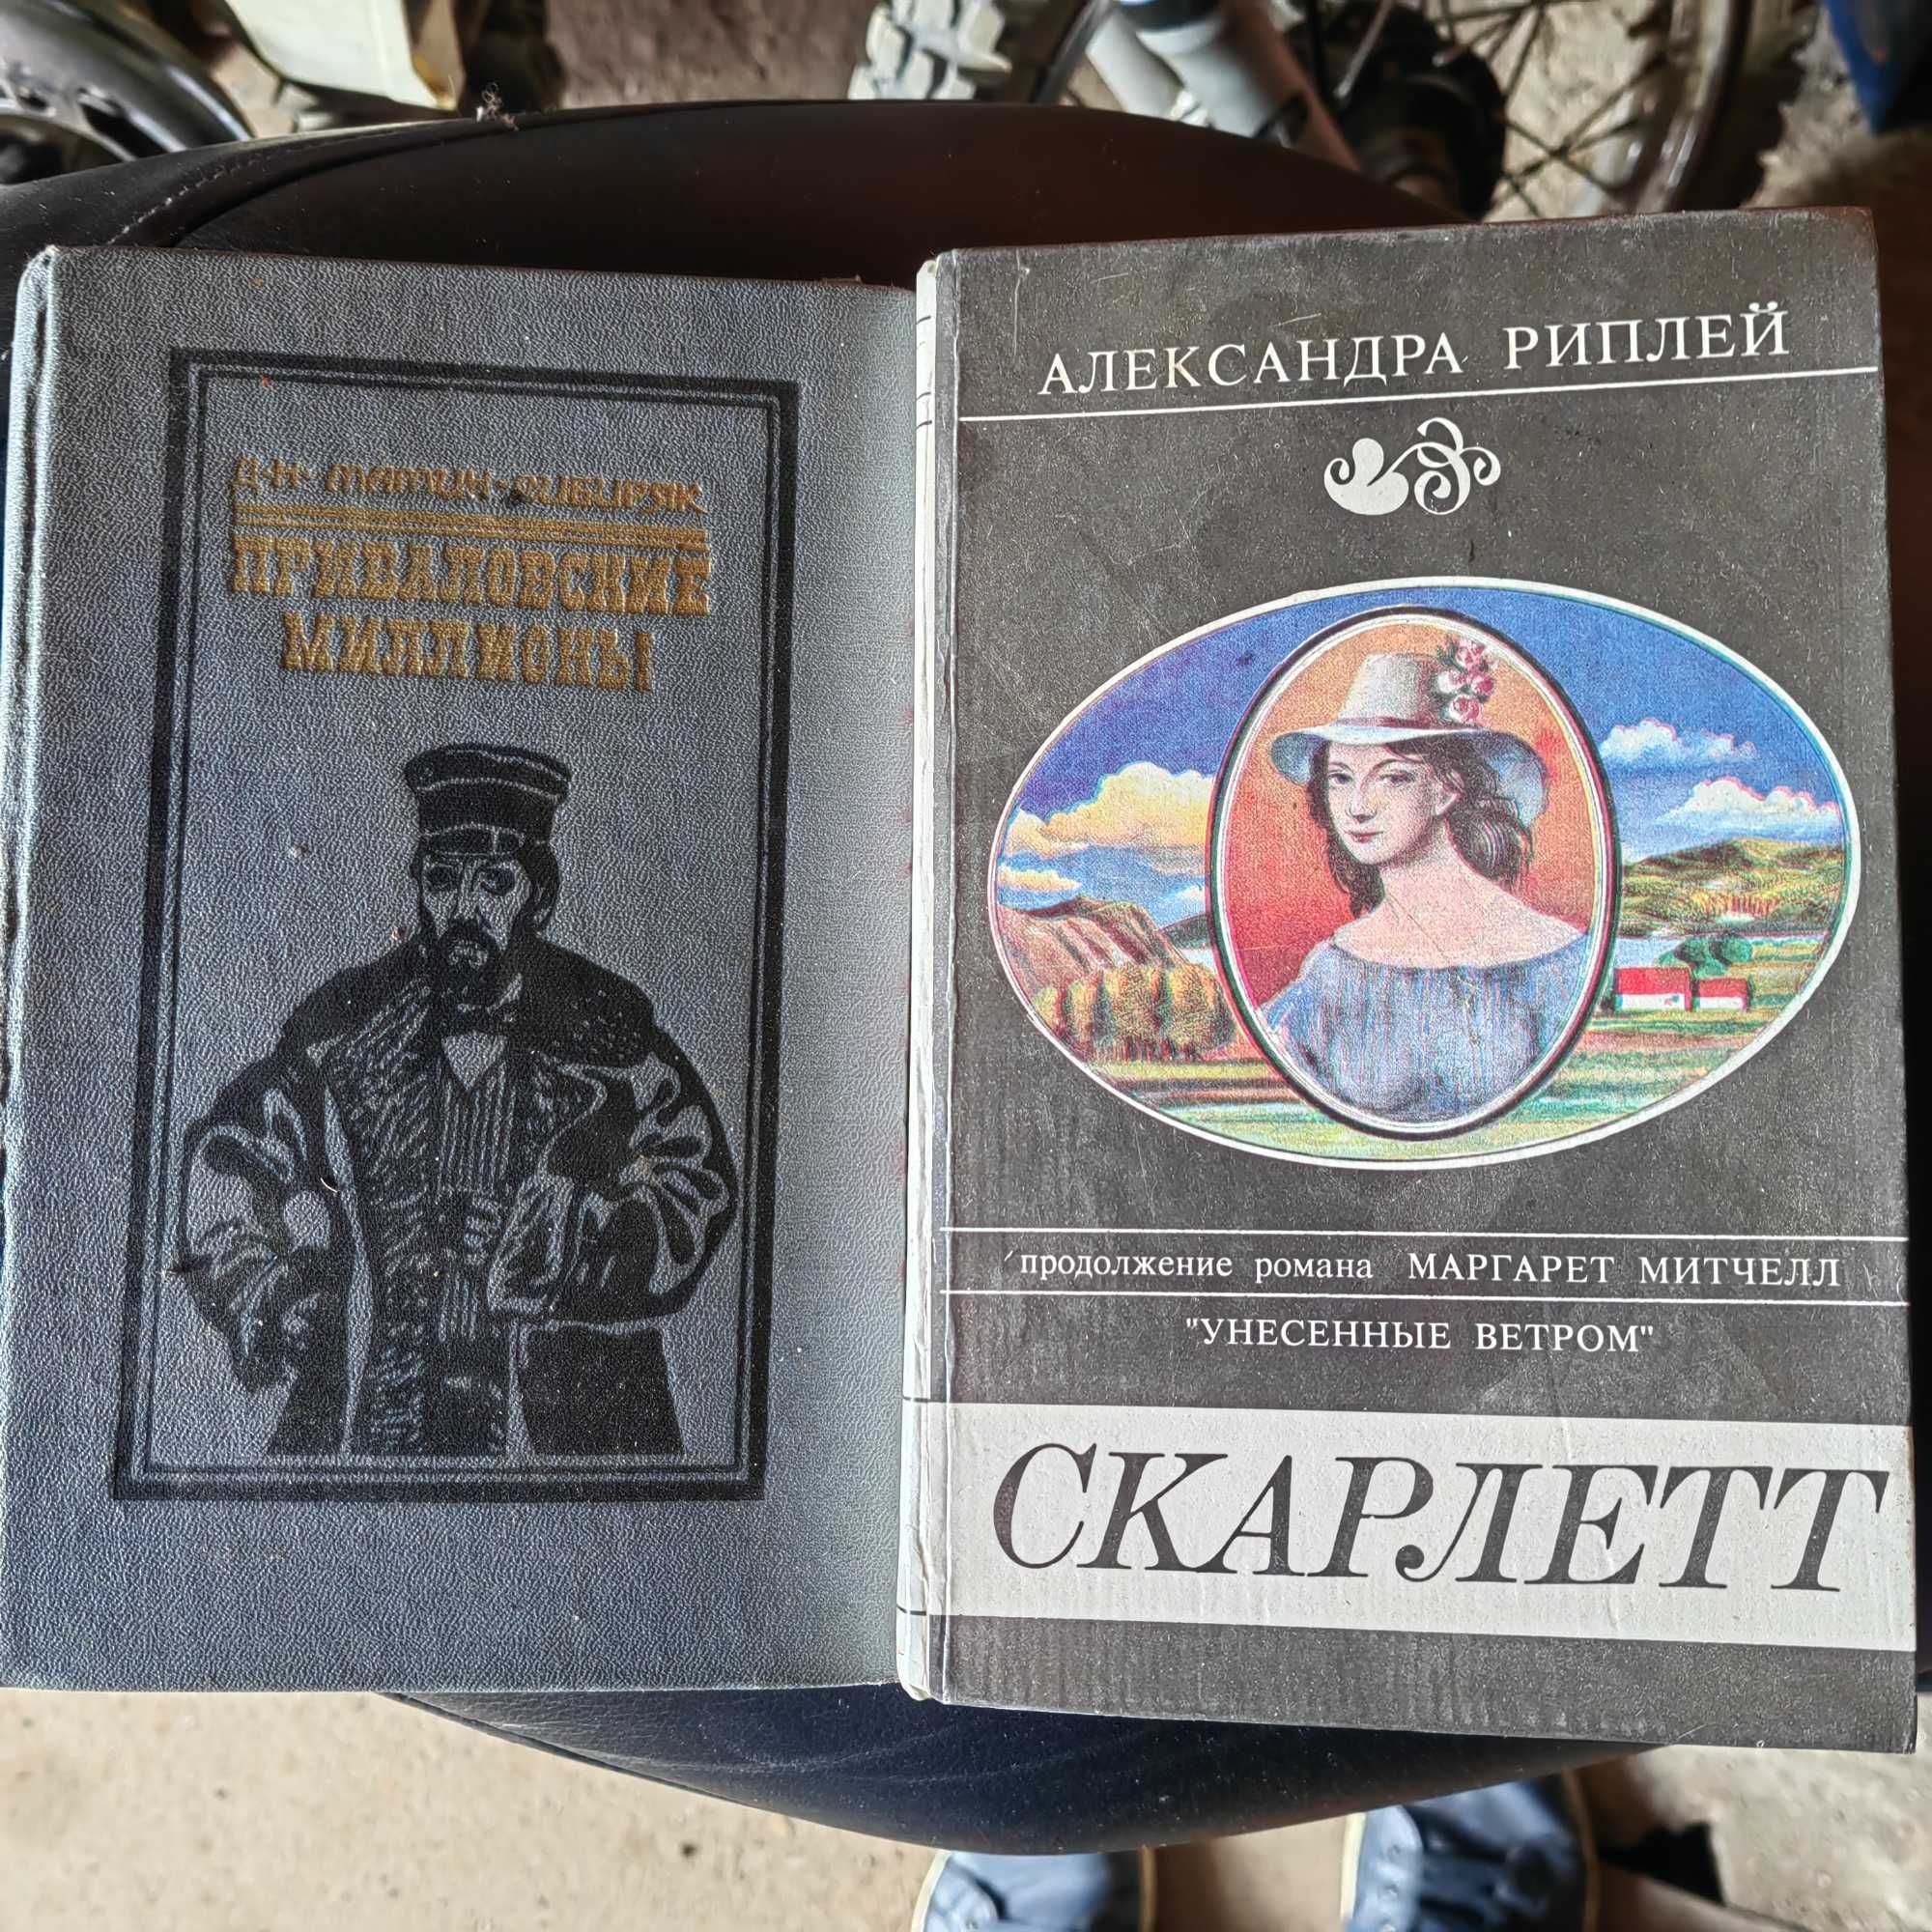 Книги литература эпохи СССР раритет бестселлеры.